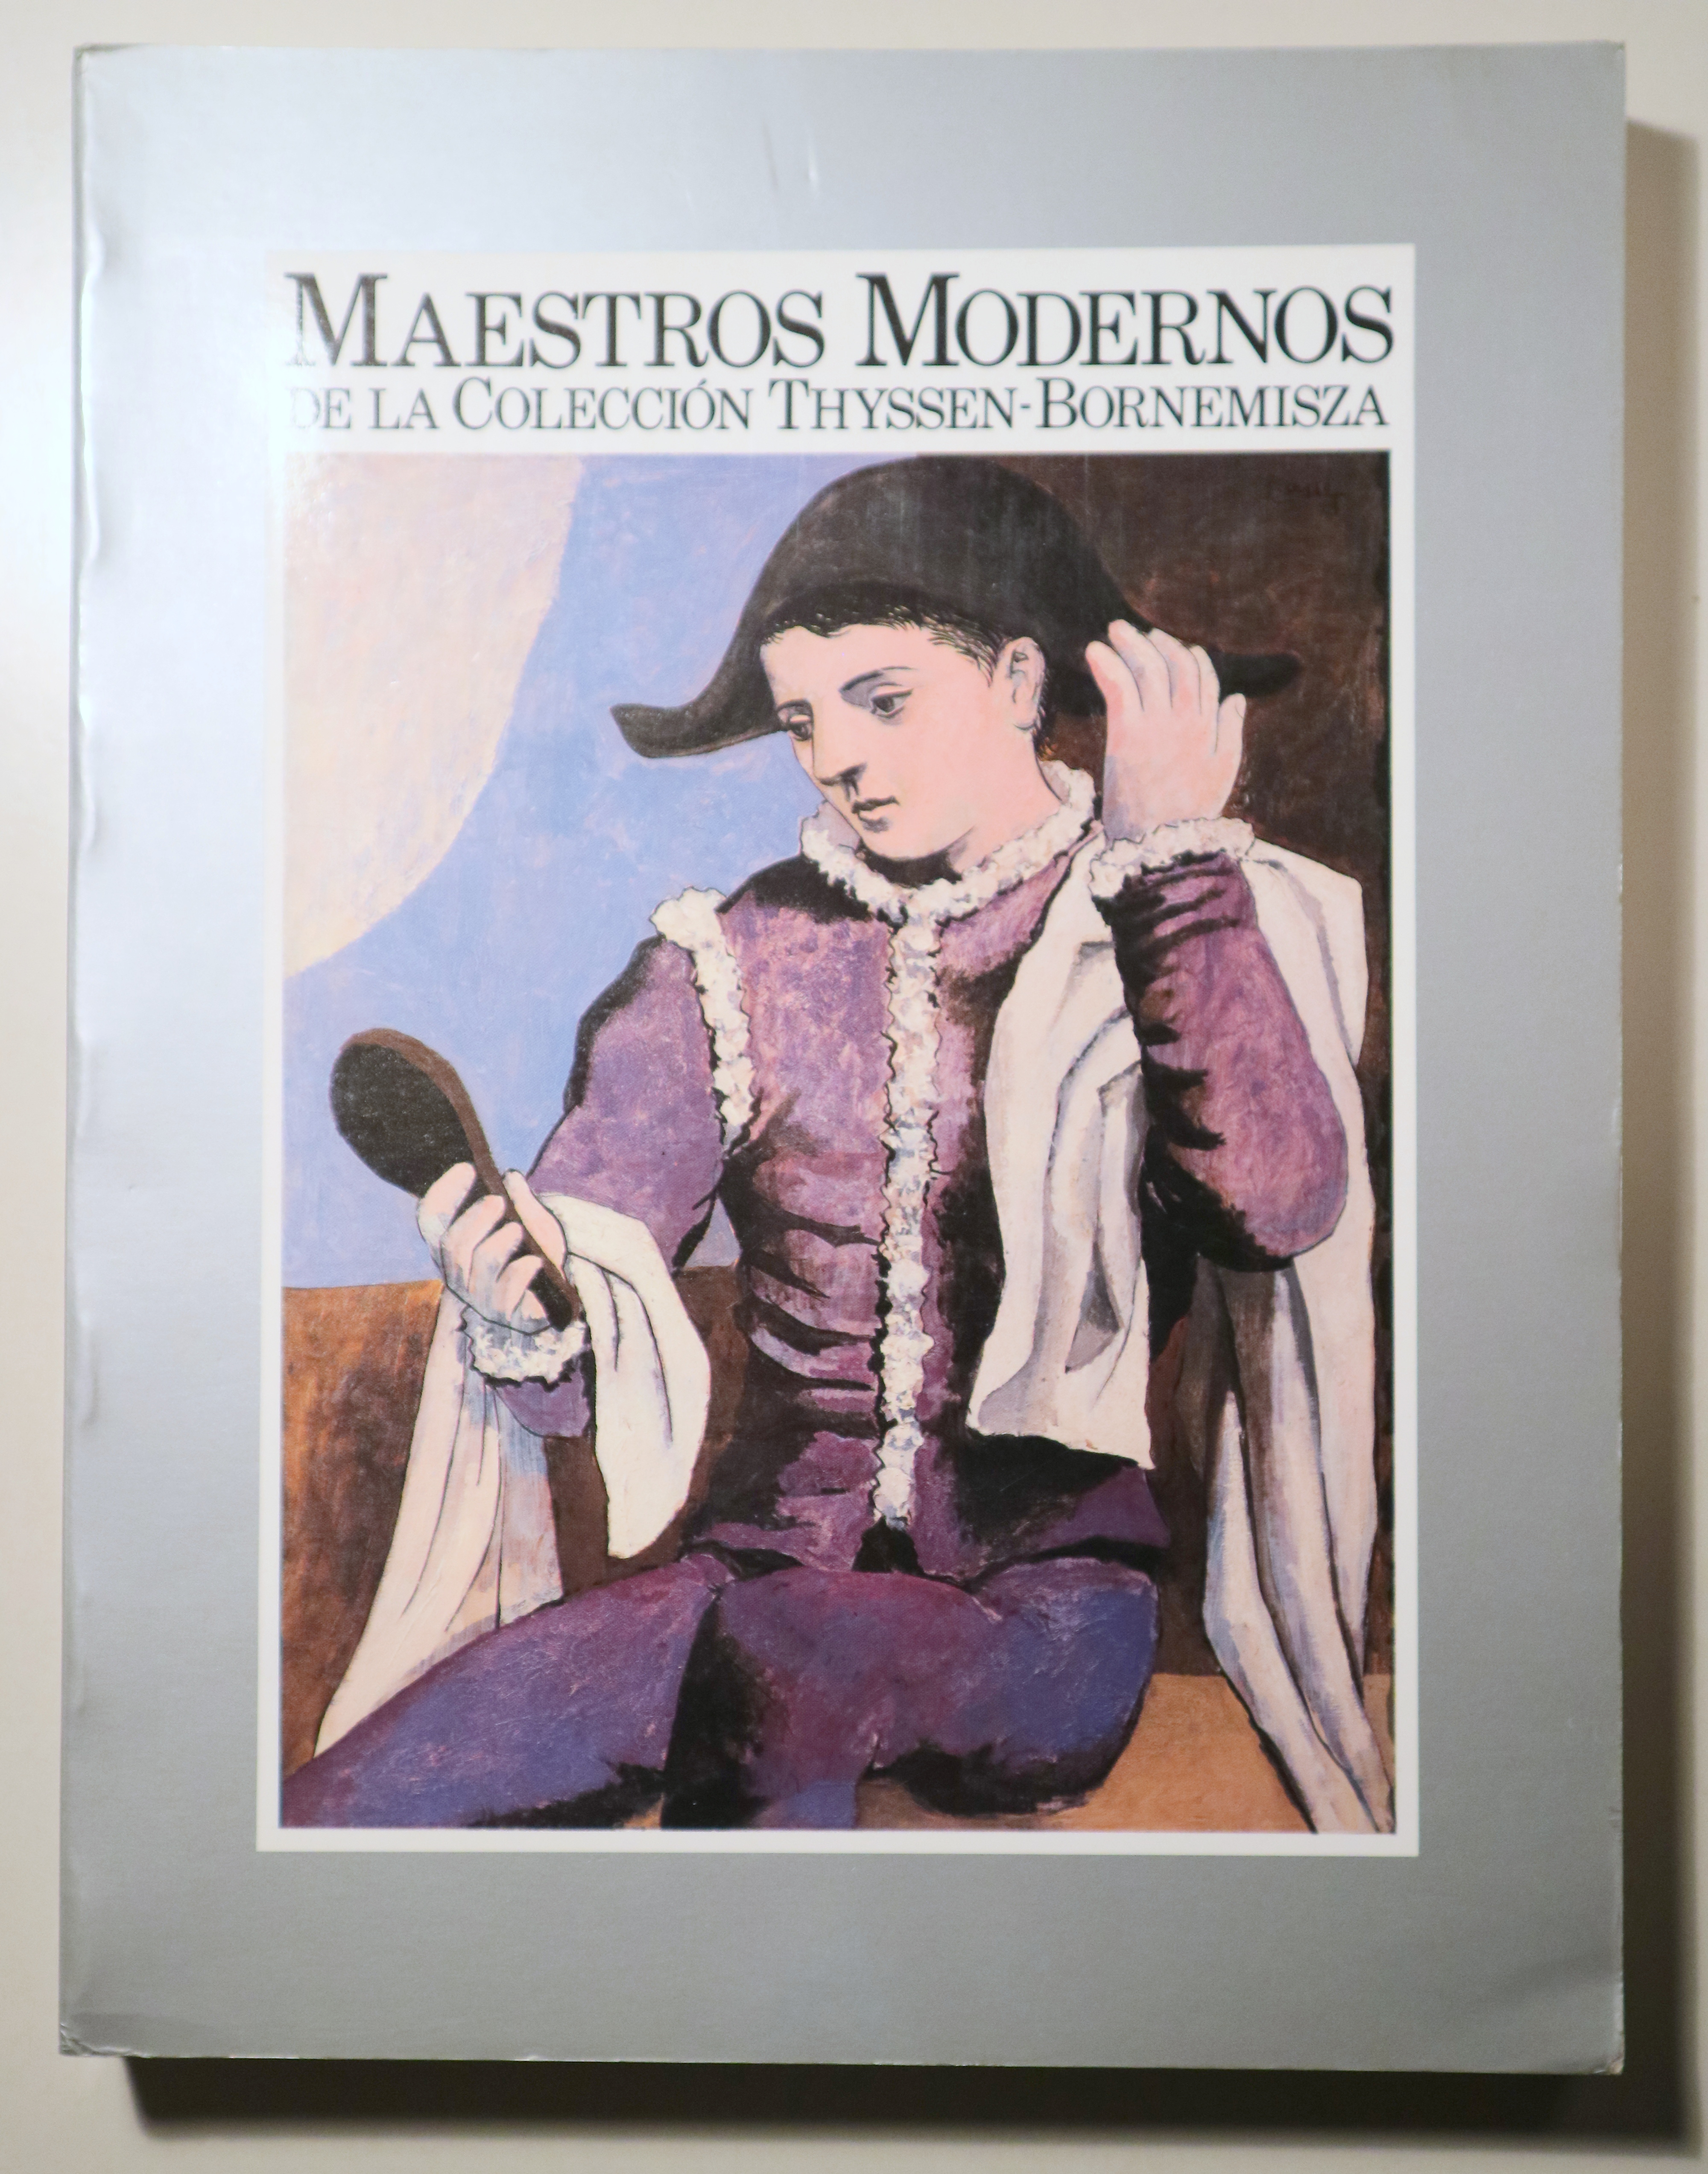 MAESTROS MODERNOS  de la Colección Thyssen-Bornemisza - Madrid 1986 - Muy ilustrado